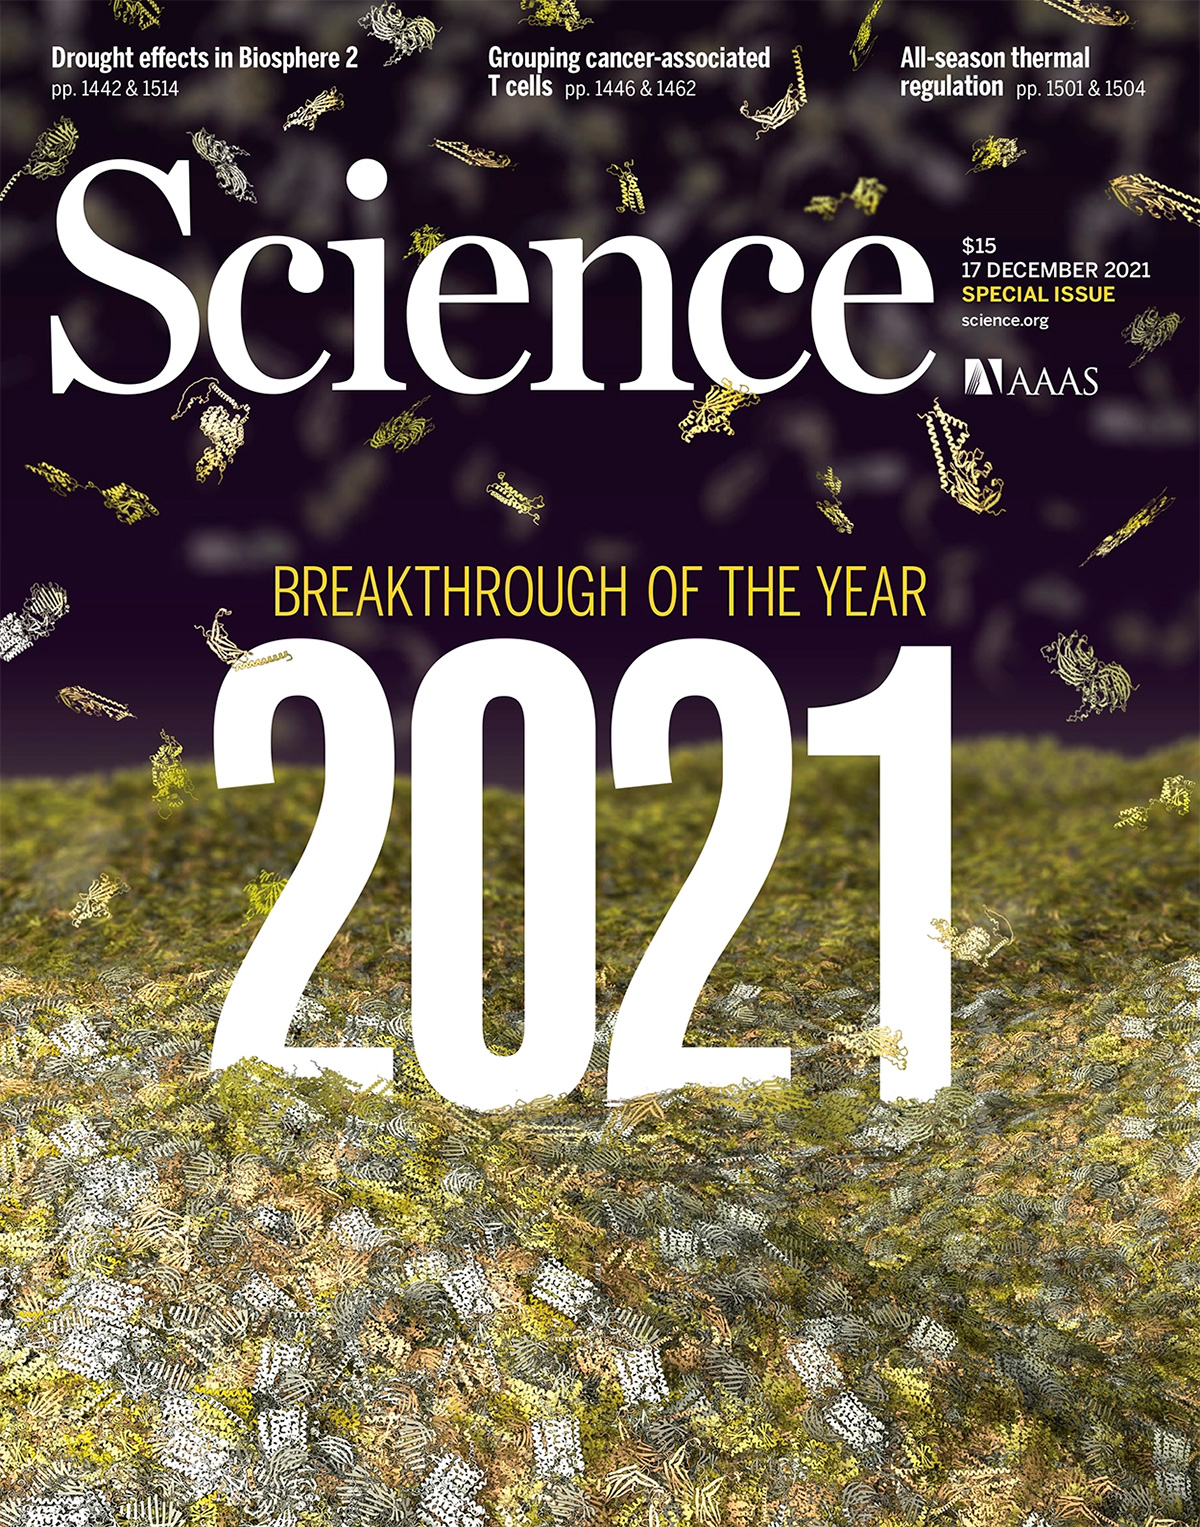 La revista Science elige la terapia con MDMA como uno de los diez principales avances científicos del 2021